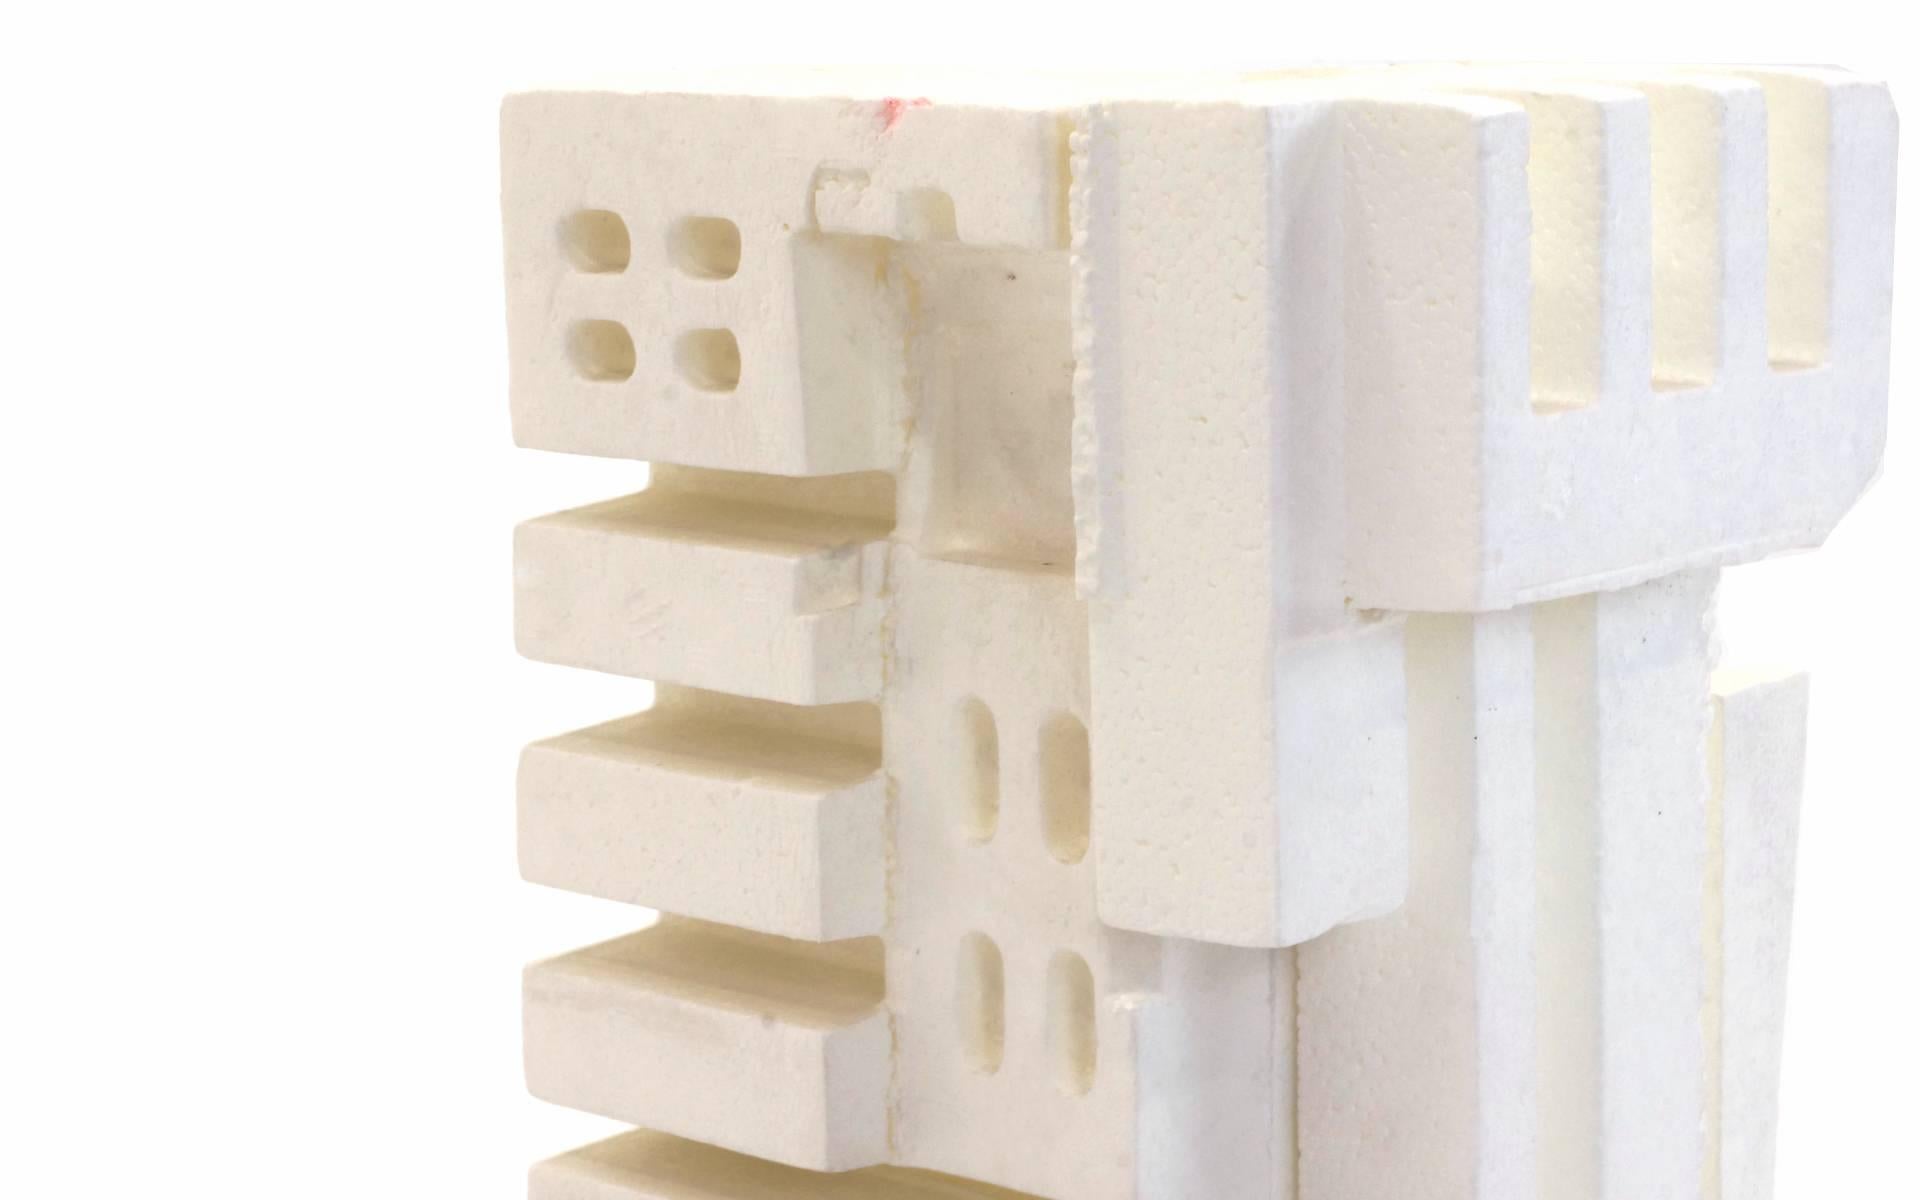 Fin du 20e siècle Sculpture Irving Harper en Styrofoam de sa série de ' Paper Sculptures '